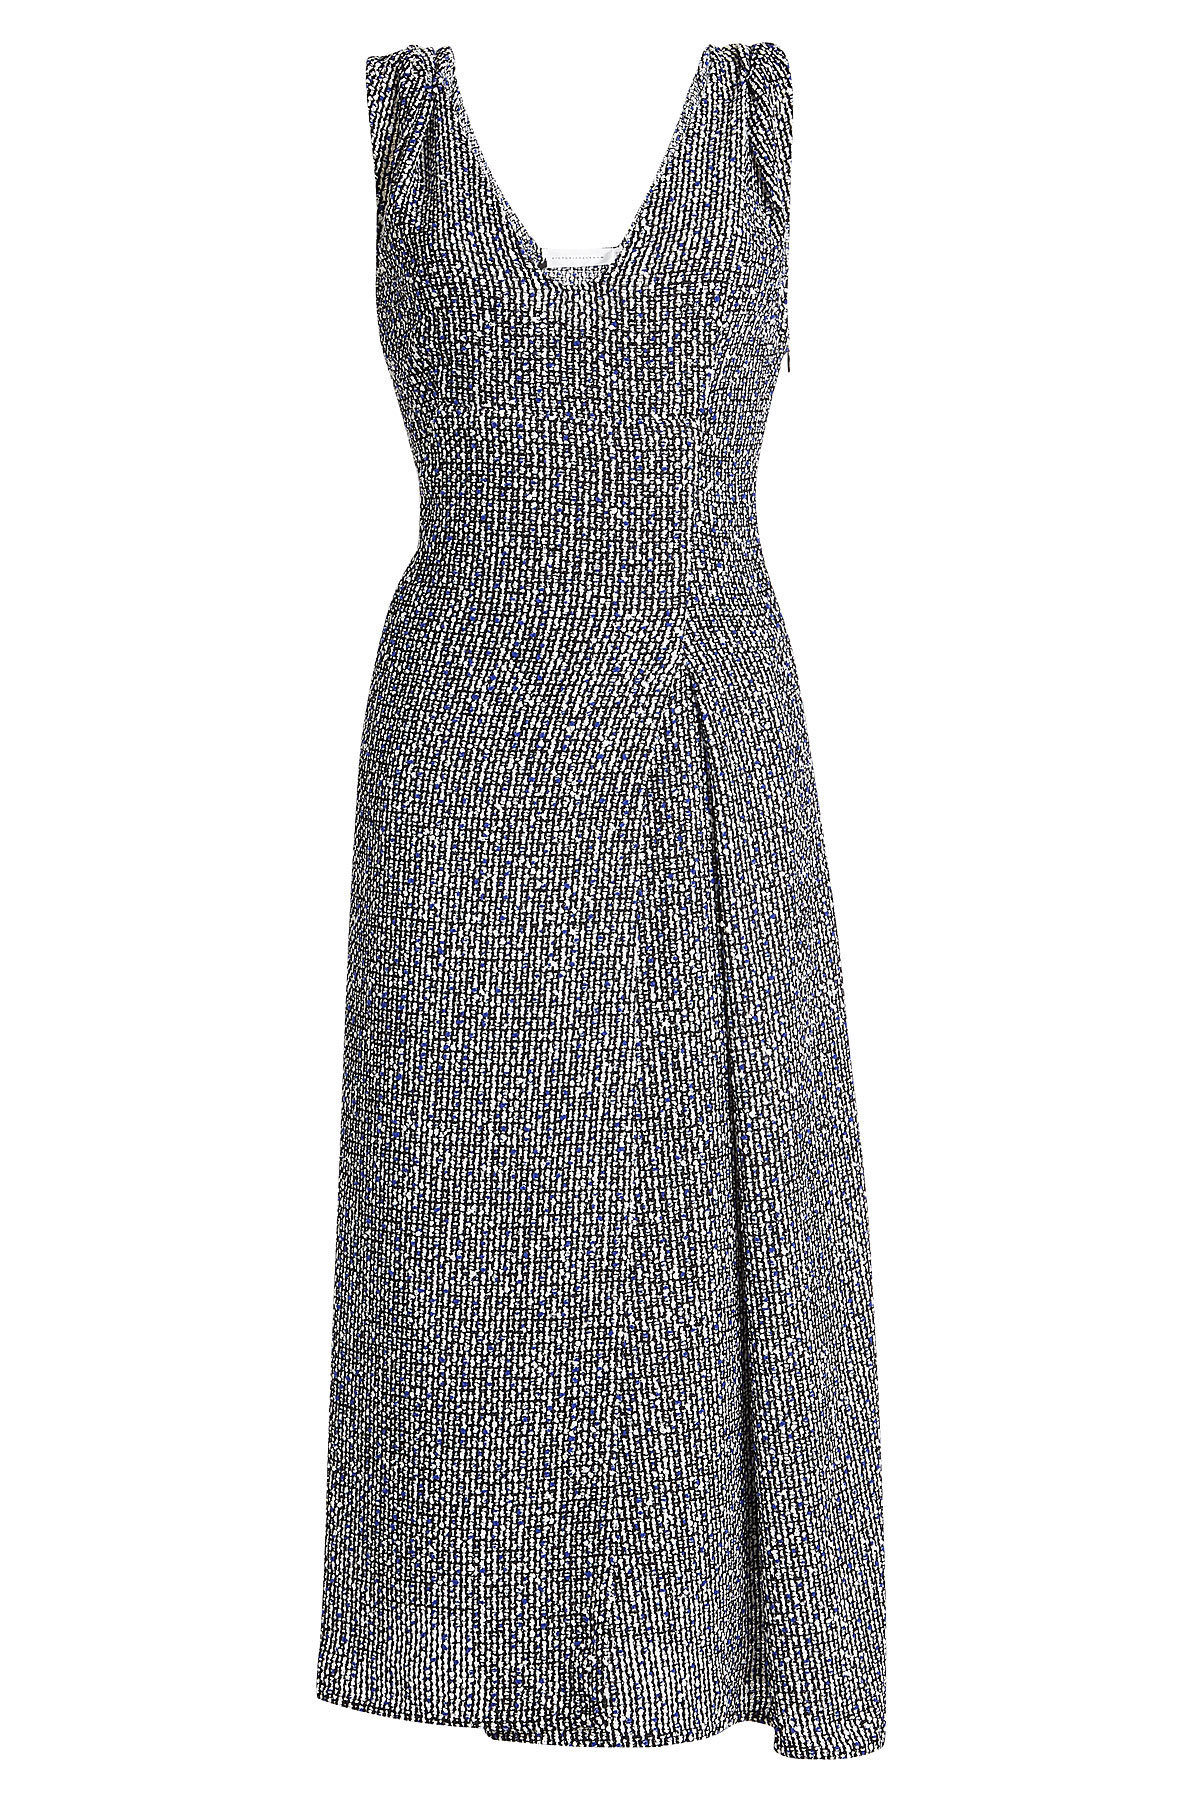 Bouclé Dress with Linen by Victoria Beckham